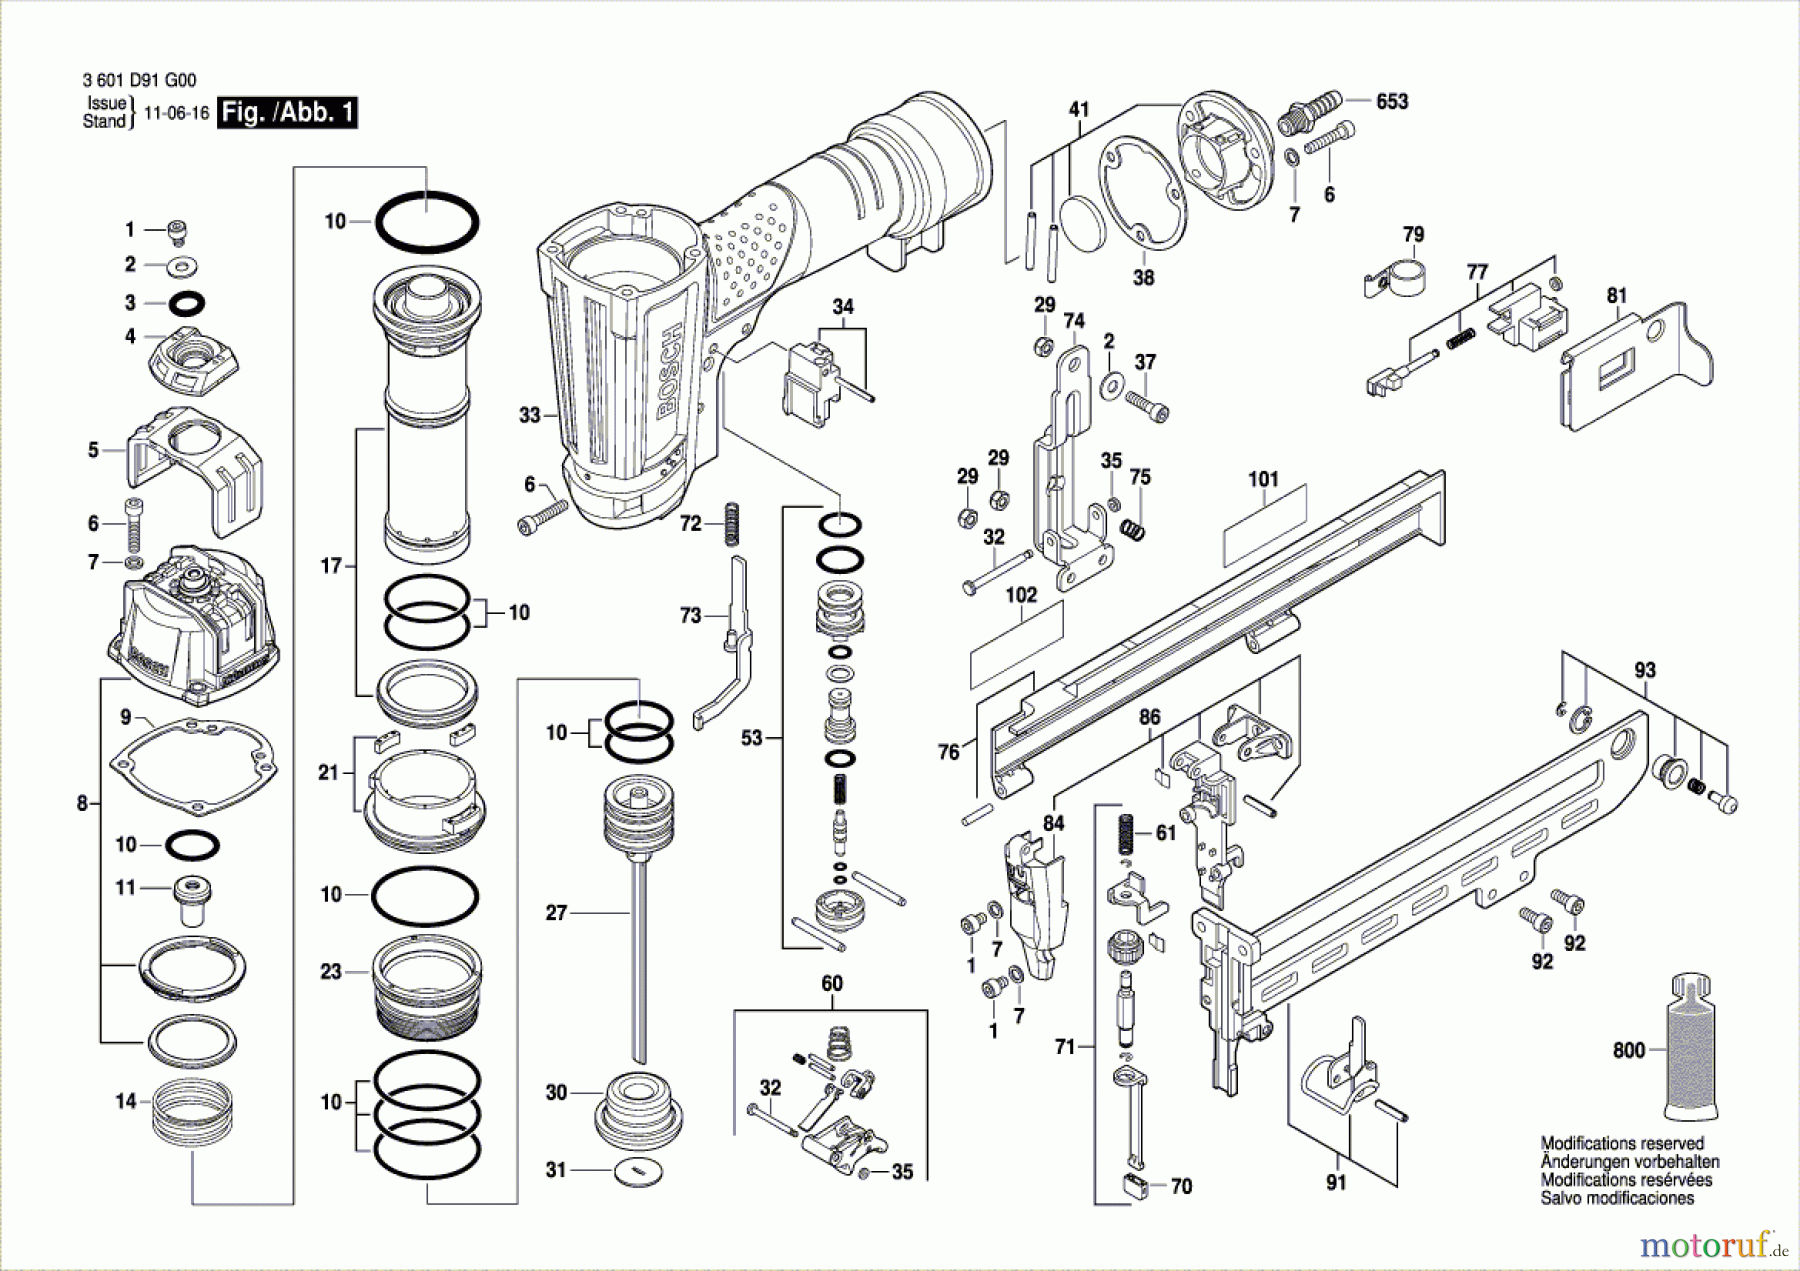  Bosch Werkzeug Druckluftnagler GTK 40 Seite 1